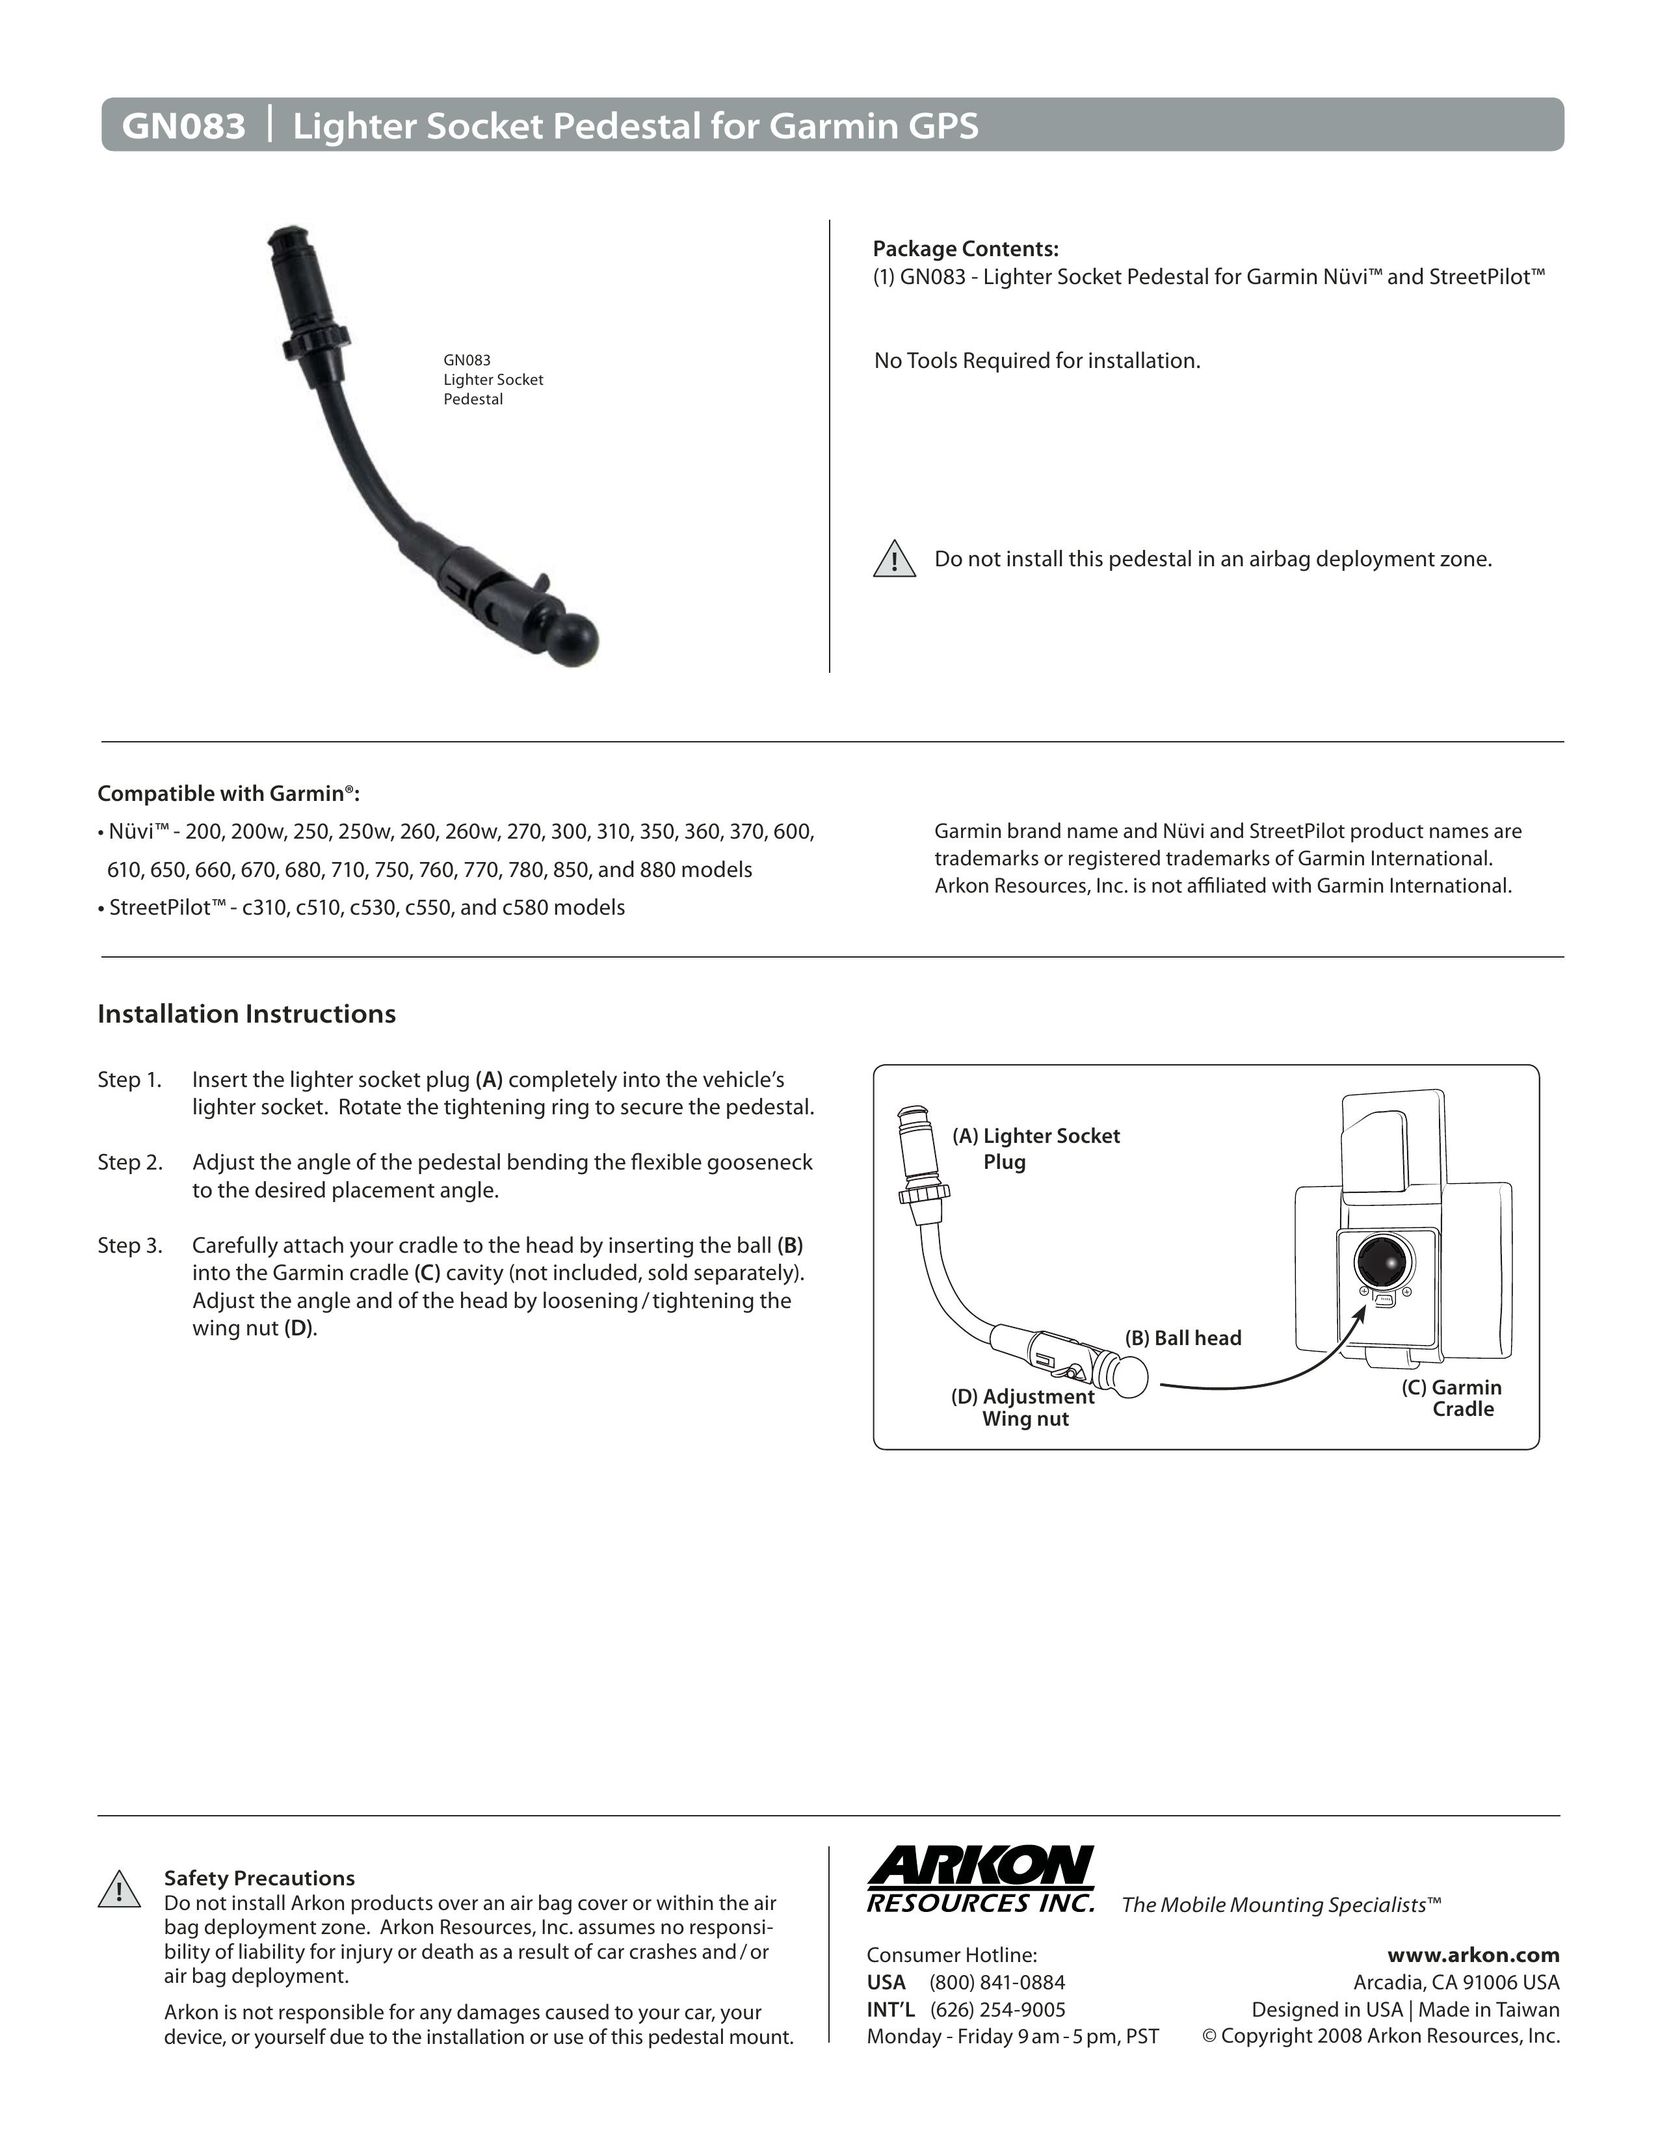 Avaya GN083 Drill User Manual